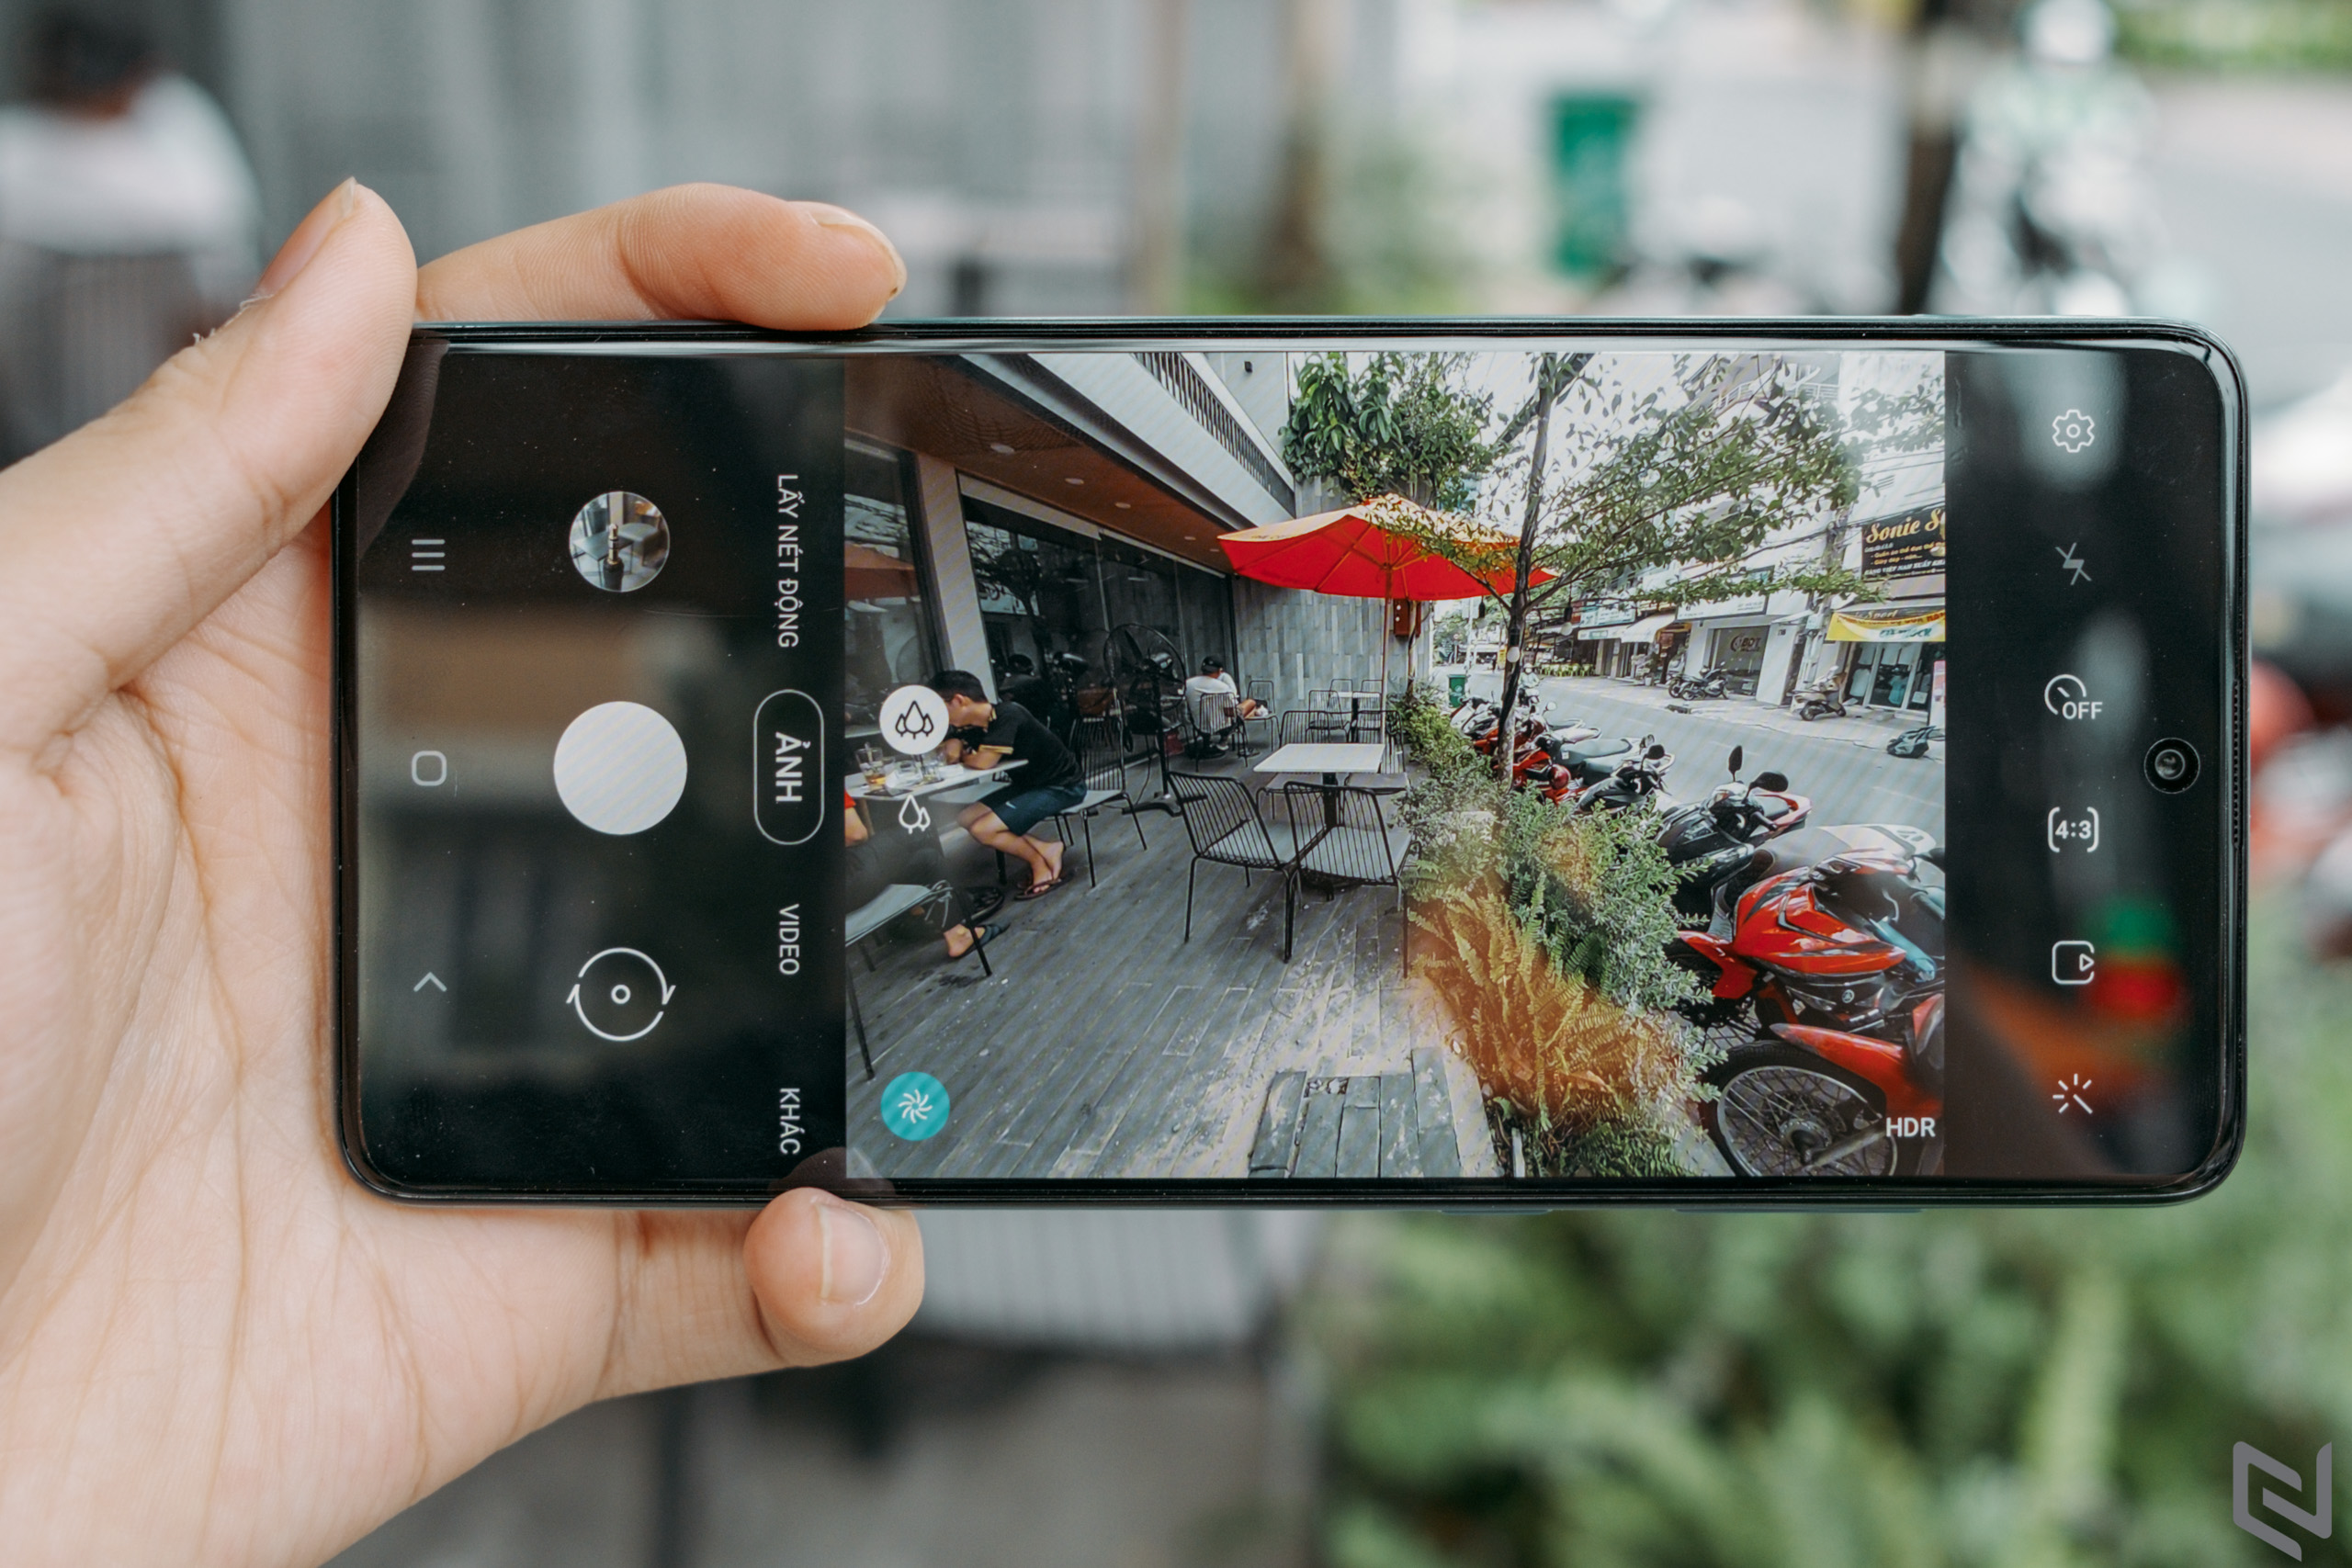 Đánh giá Samsung Galaxy A71: Camera ngon, hiệu năng đỉnh, giờ đã không còn ngán đối thủ nào